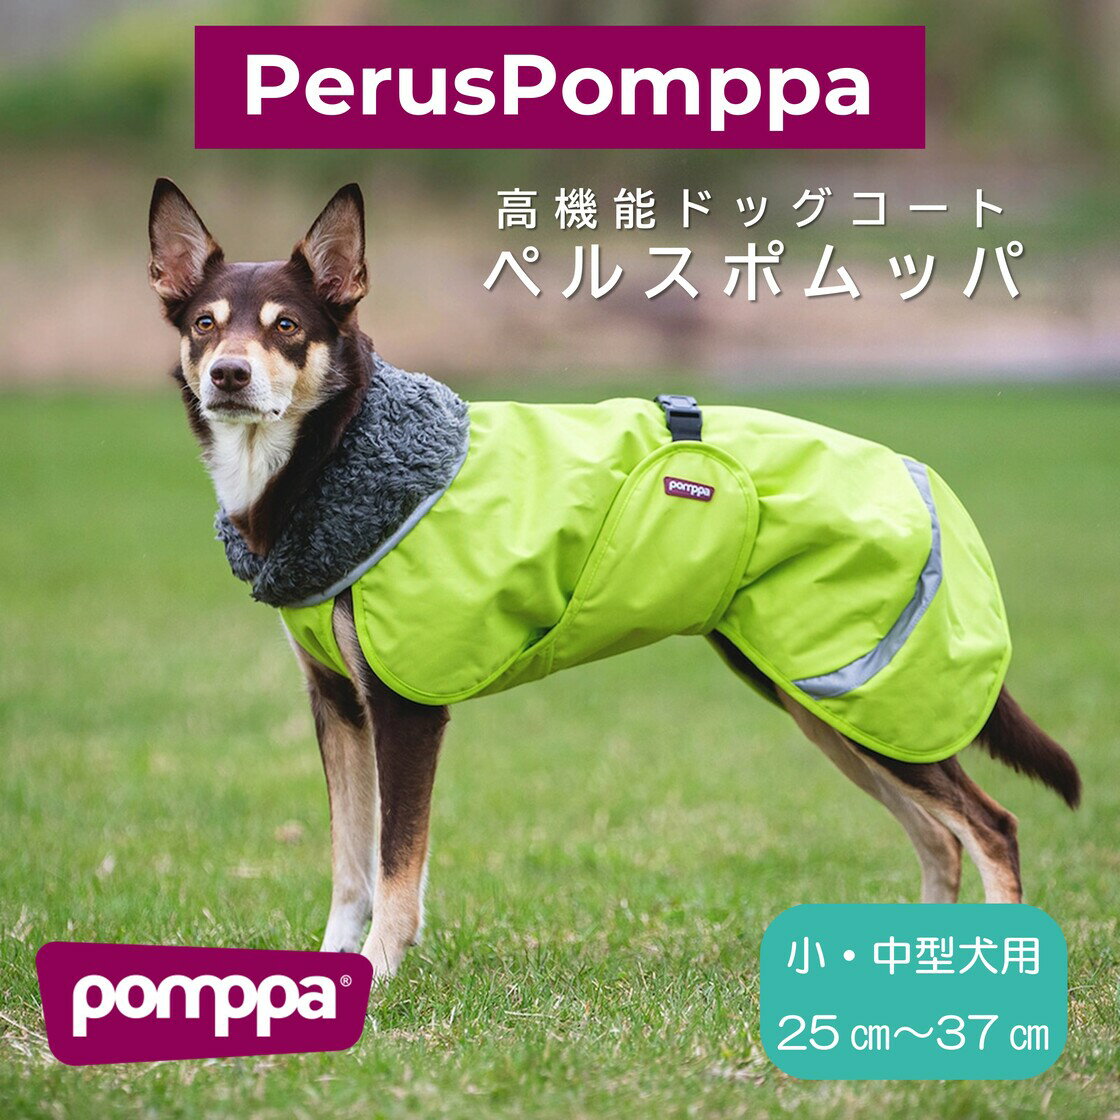 フィンランドのドッグブランド【Pomppa】【ポムッパ】・ドッグコート【Perus Pomppa】小・中型犬用